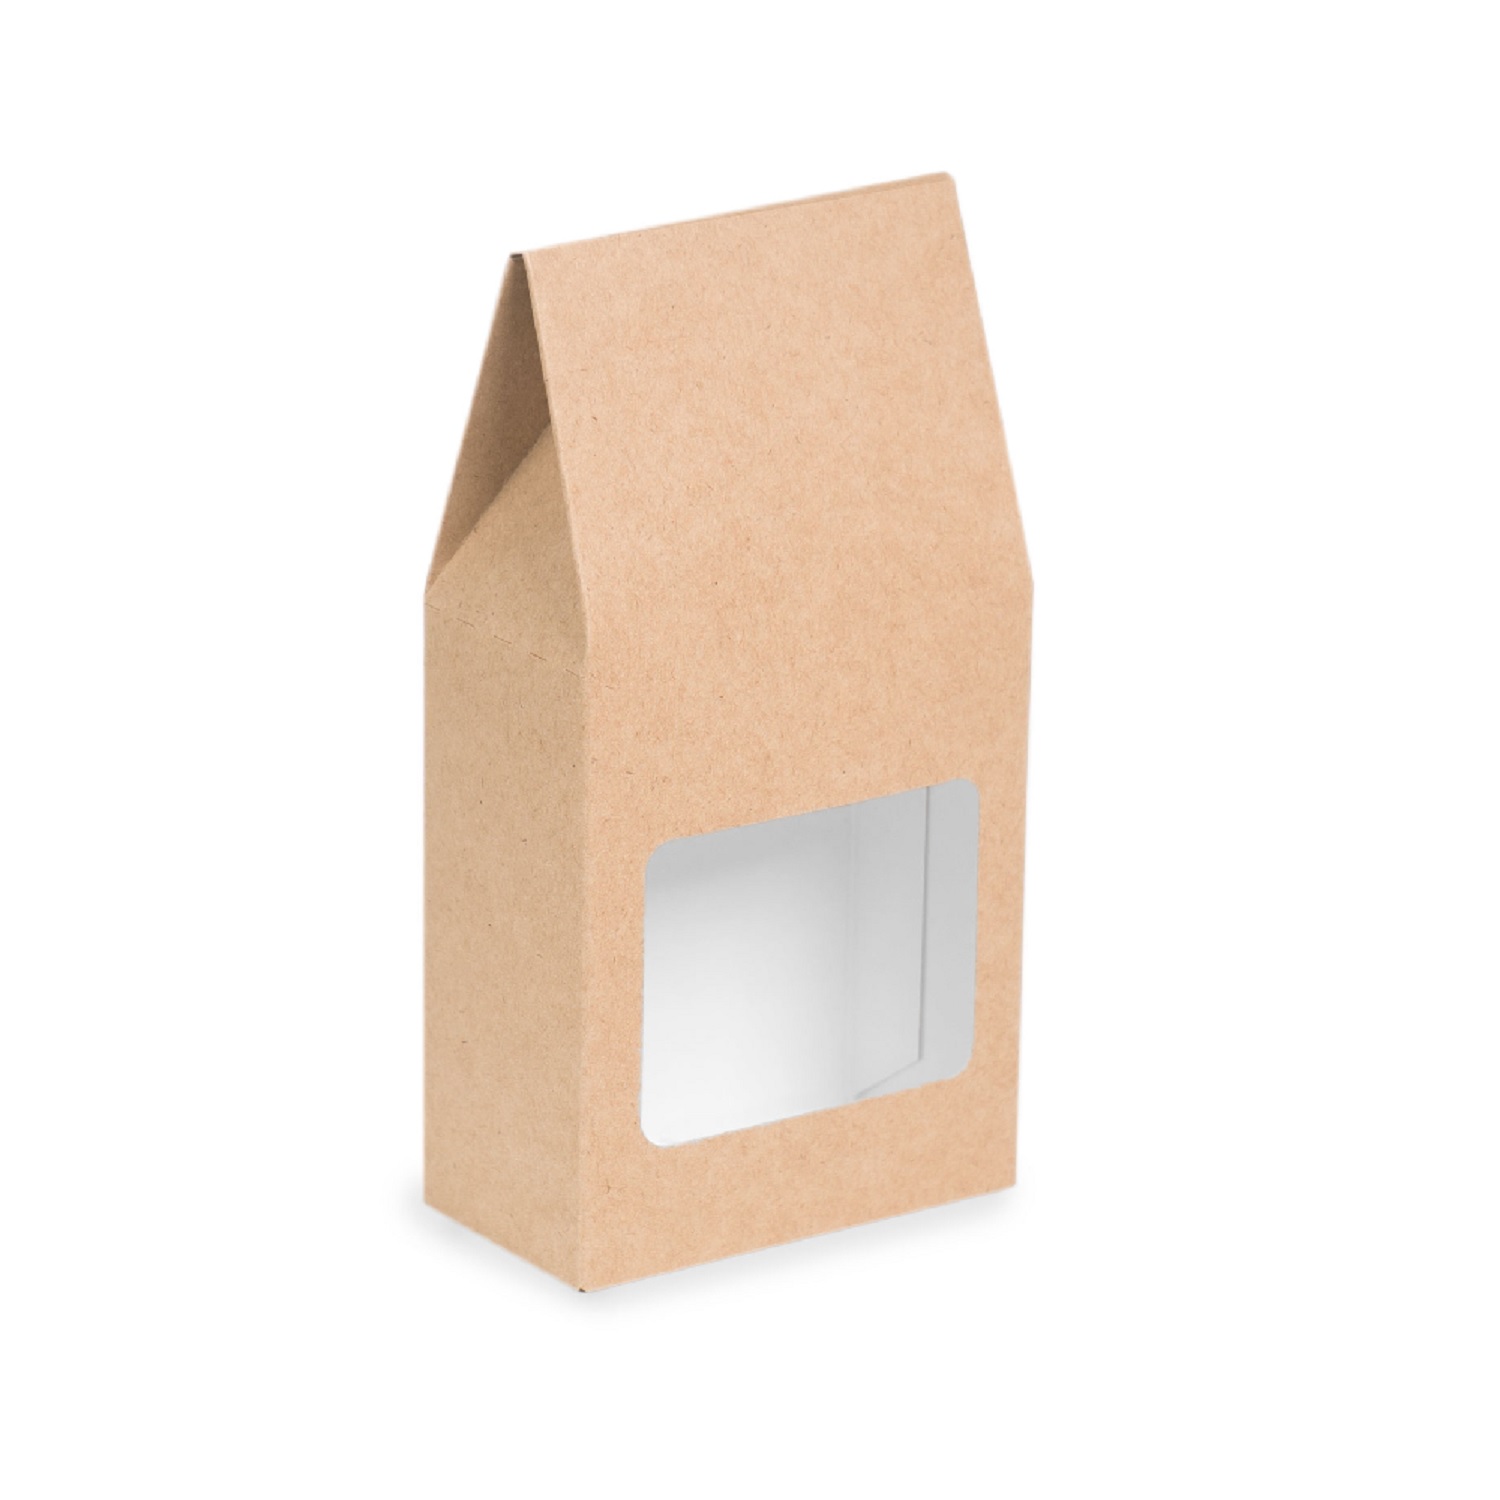 OSQ Tea Box Упаковка для сыпучих продуктов 18,2х9,2х5см с окном (без пленки)